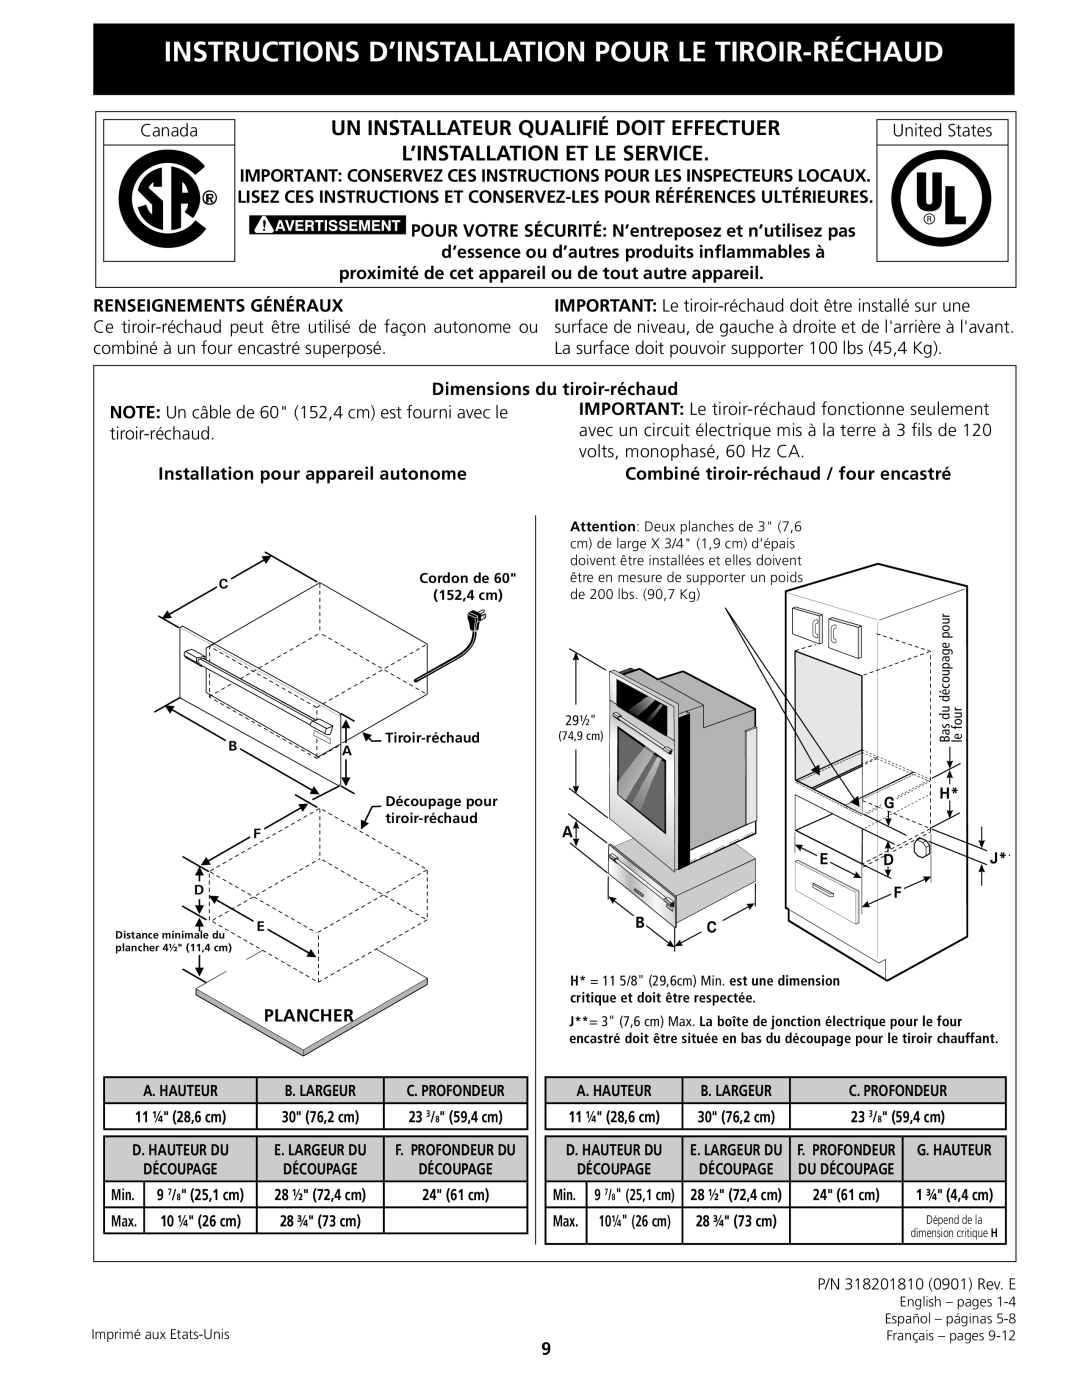 Electrolux 318201810 installation instructions Instructions D’Installation Pour Le Tiroir-Réchaud 